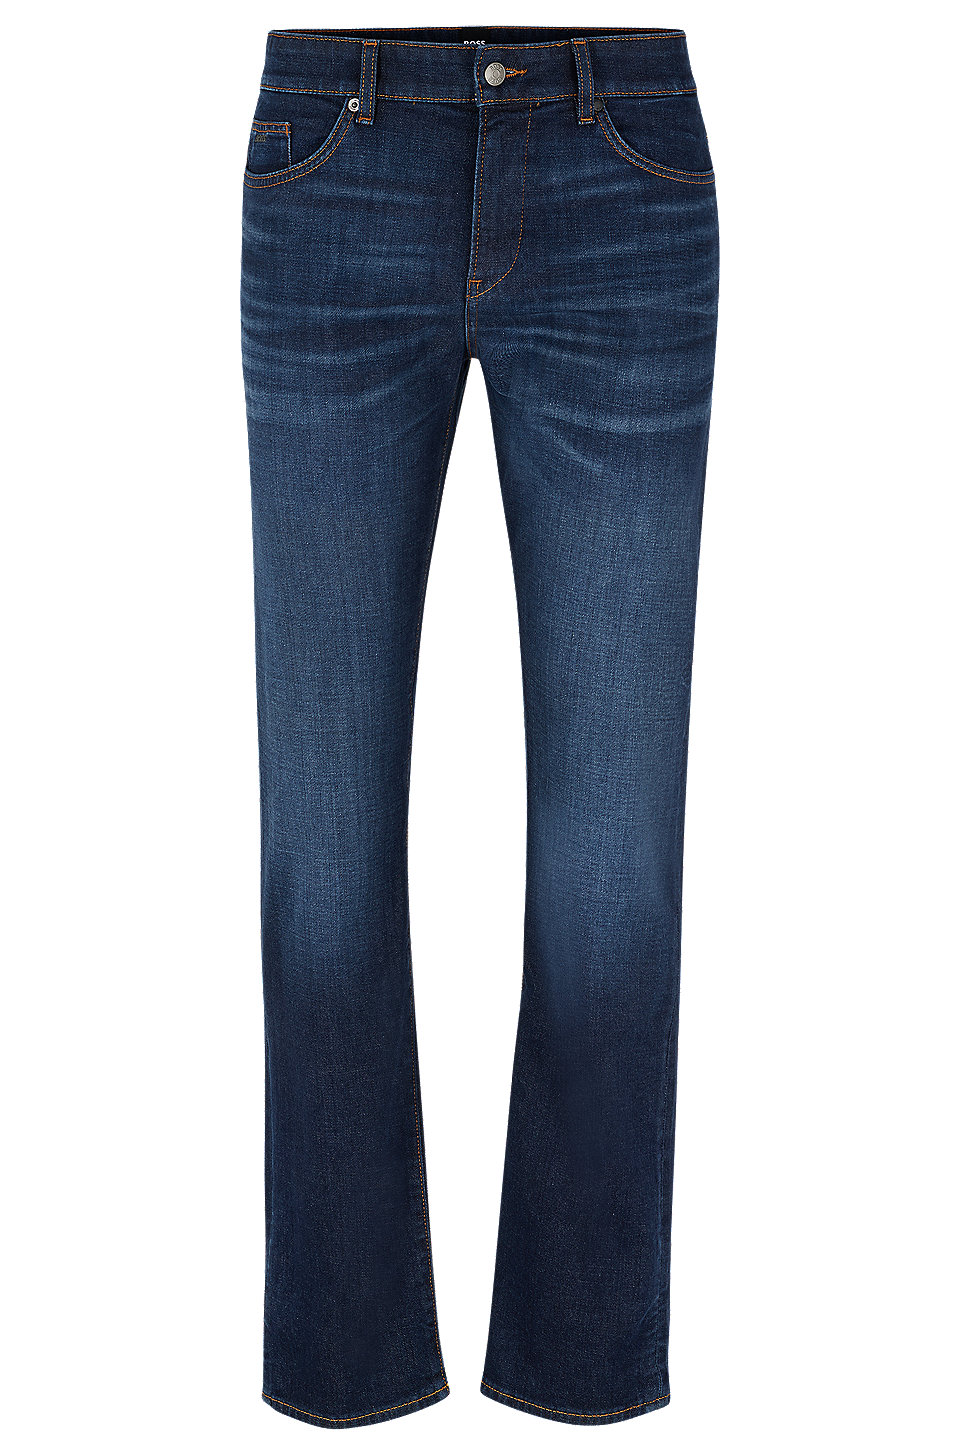 BOSS - Slim-fit jeans in super-soft dark-blue denim